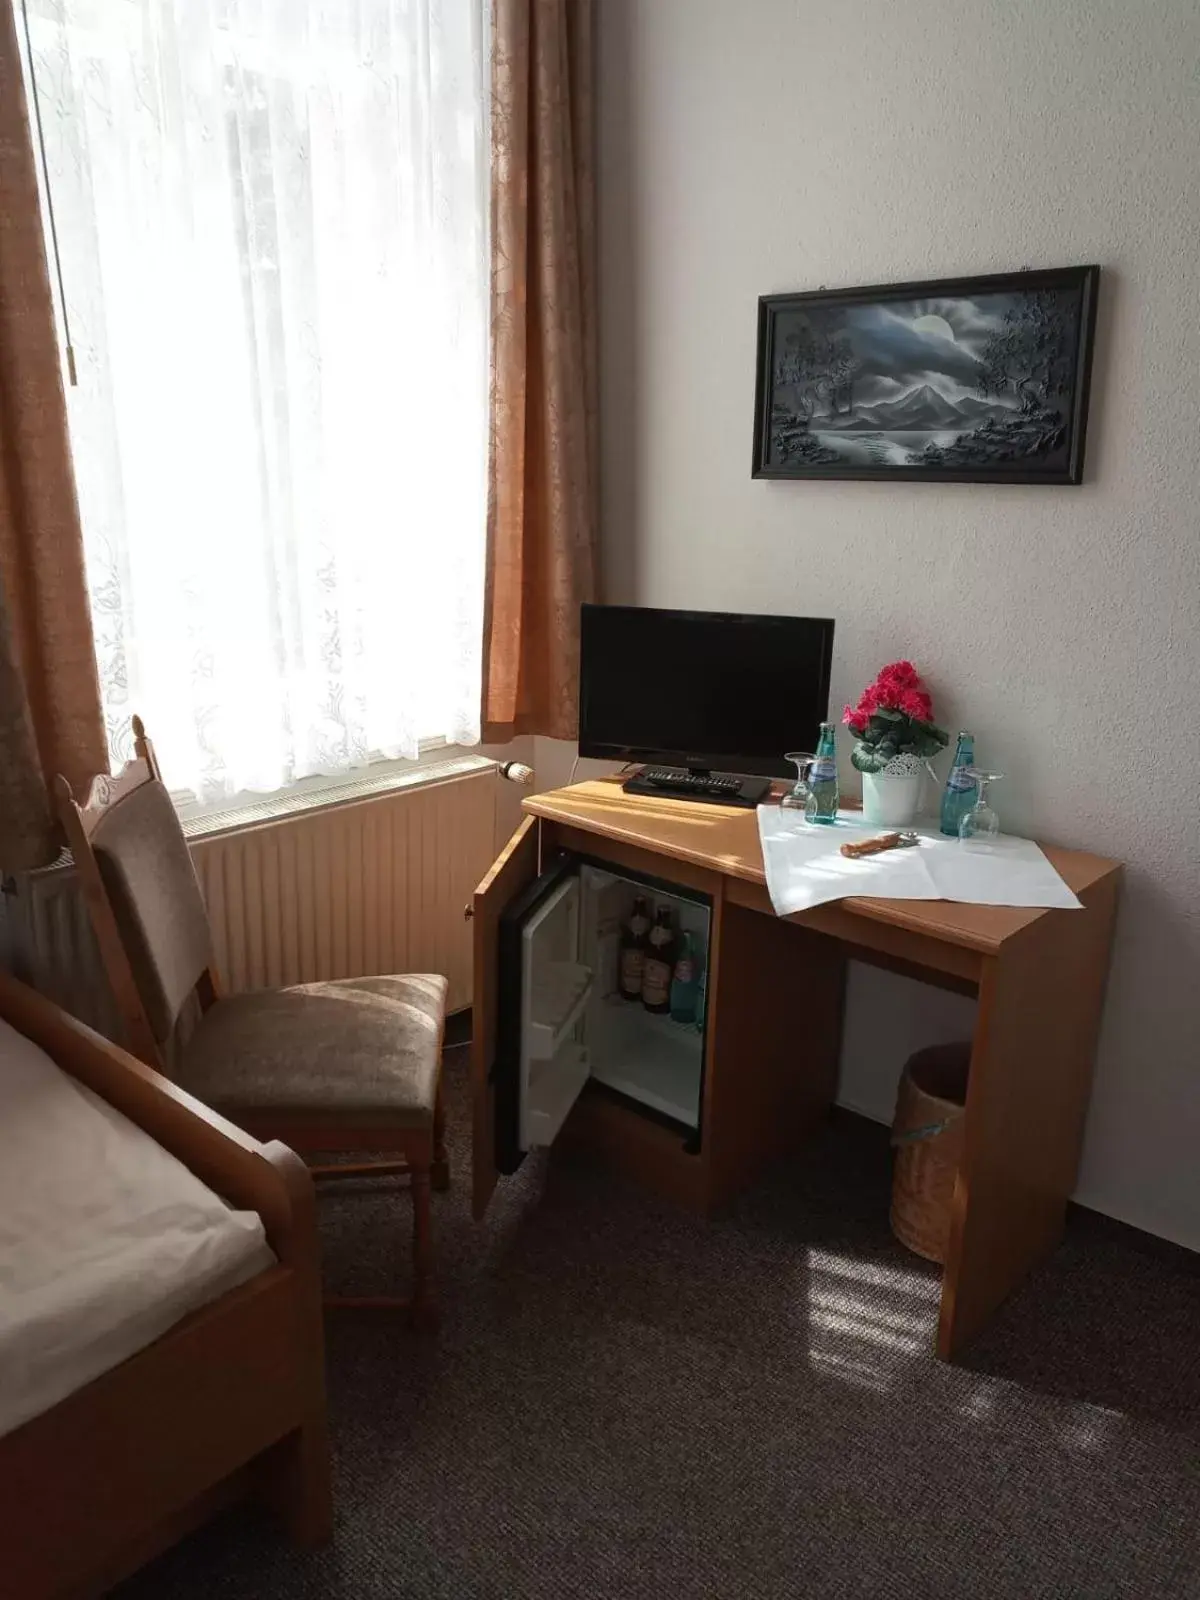 Single Room - single occupancy in Hotel Zur Talsperre